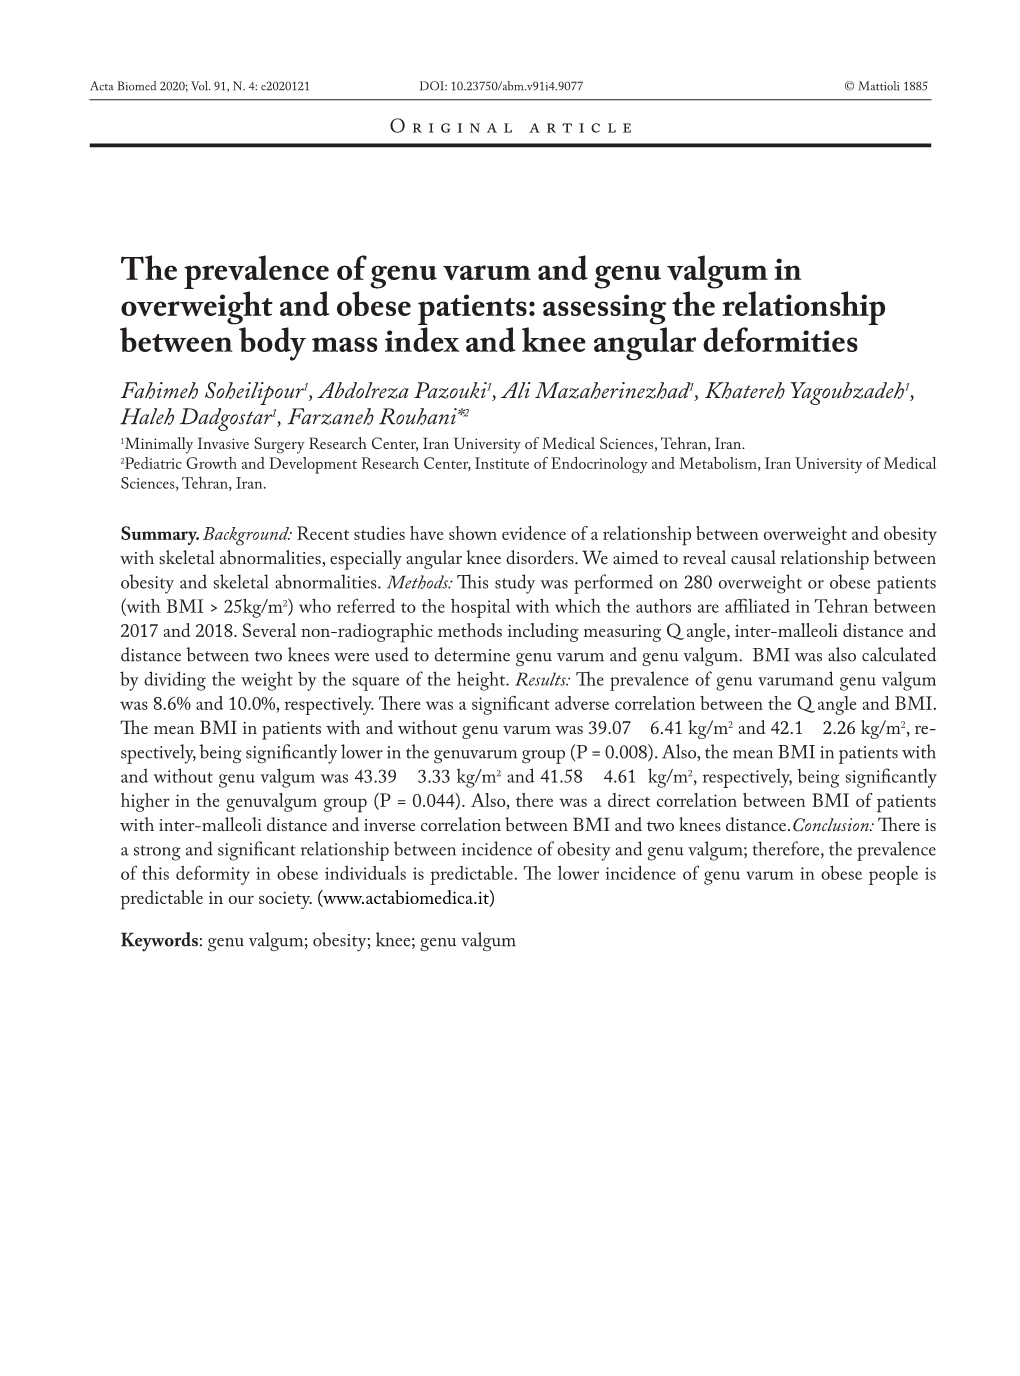 The Prevalence of Genu Varum and Genu Valgum In